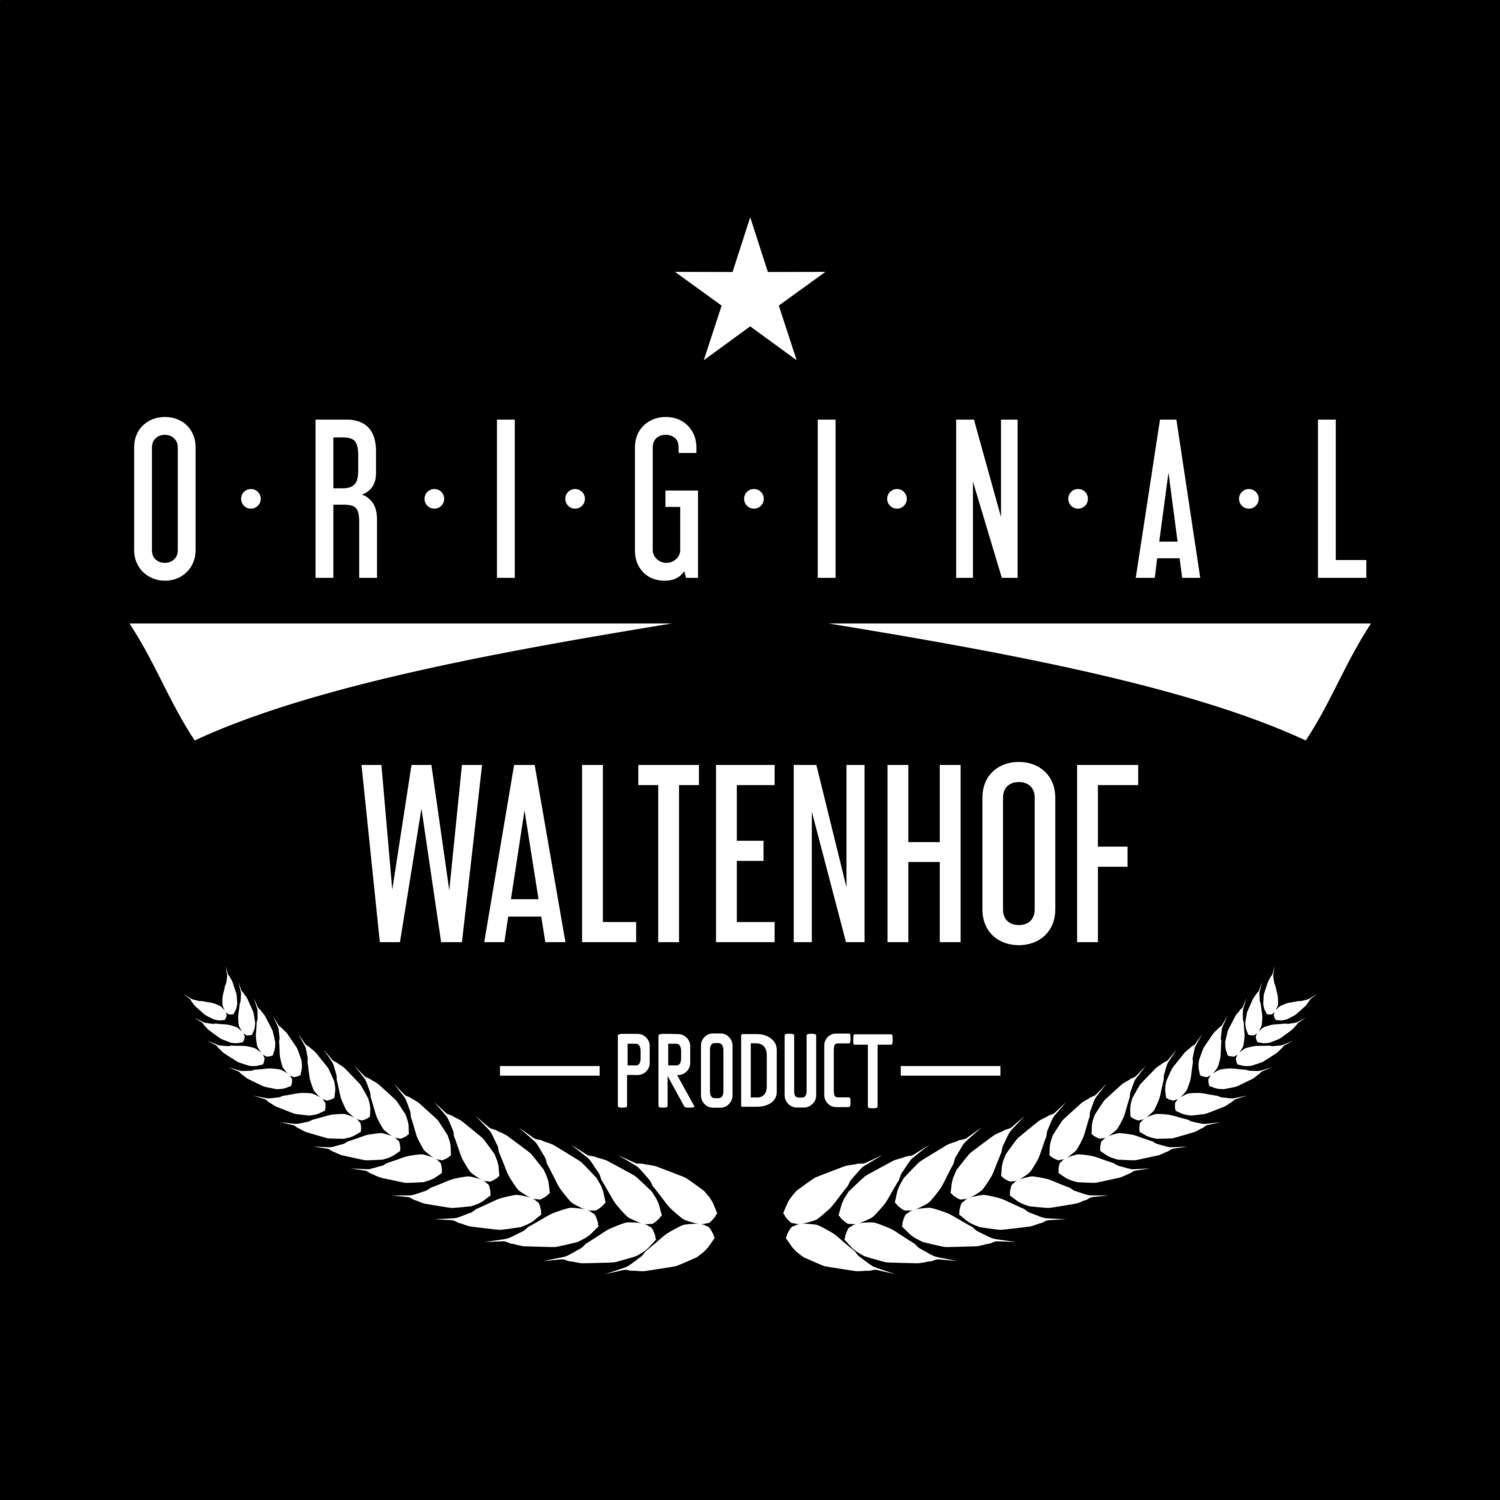 Waltenhof T-Shirt »Original Product«